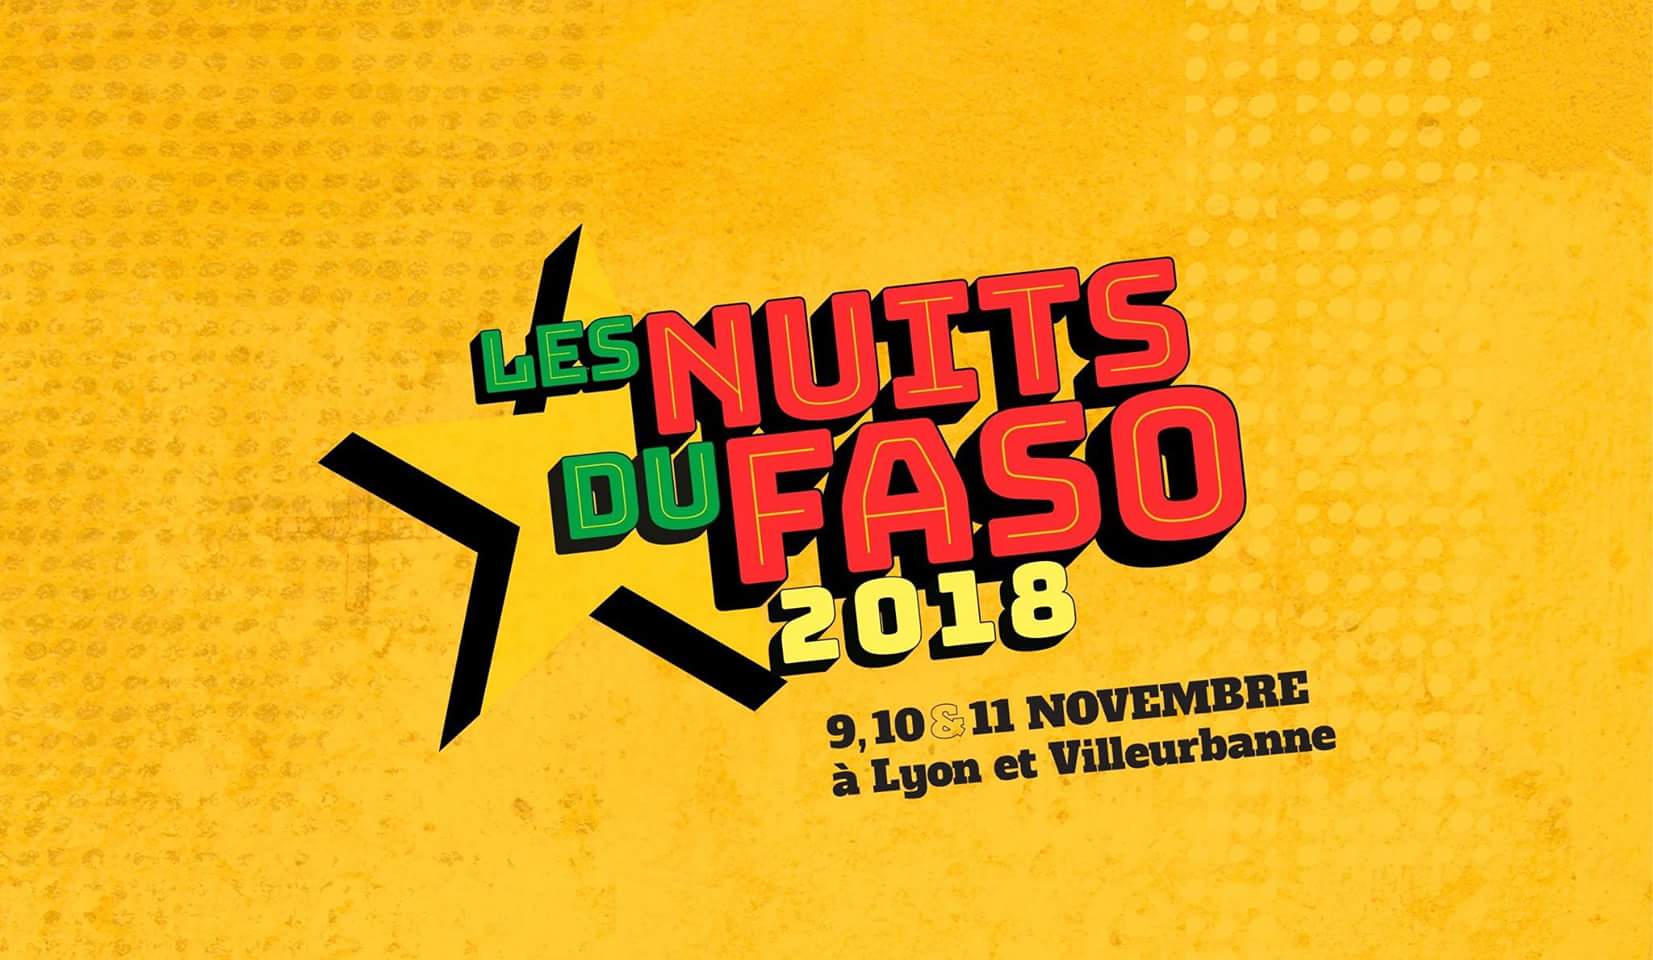  CULTURE: Zoom sur les Nuits du Faso avec le promoteur de l’événement